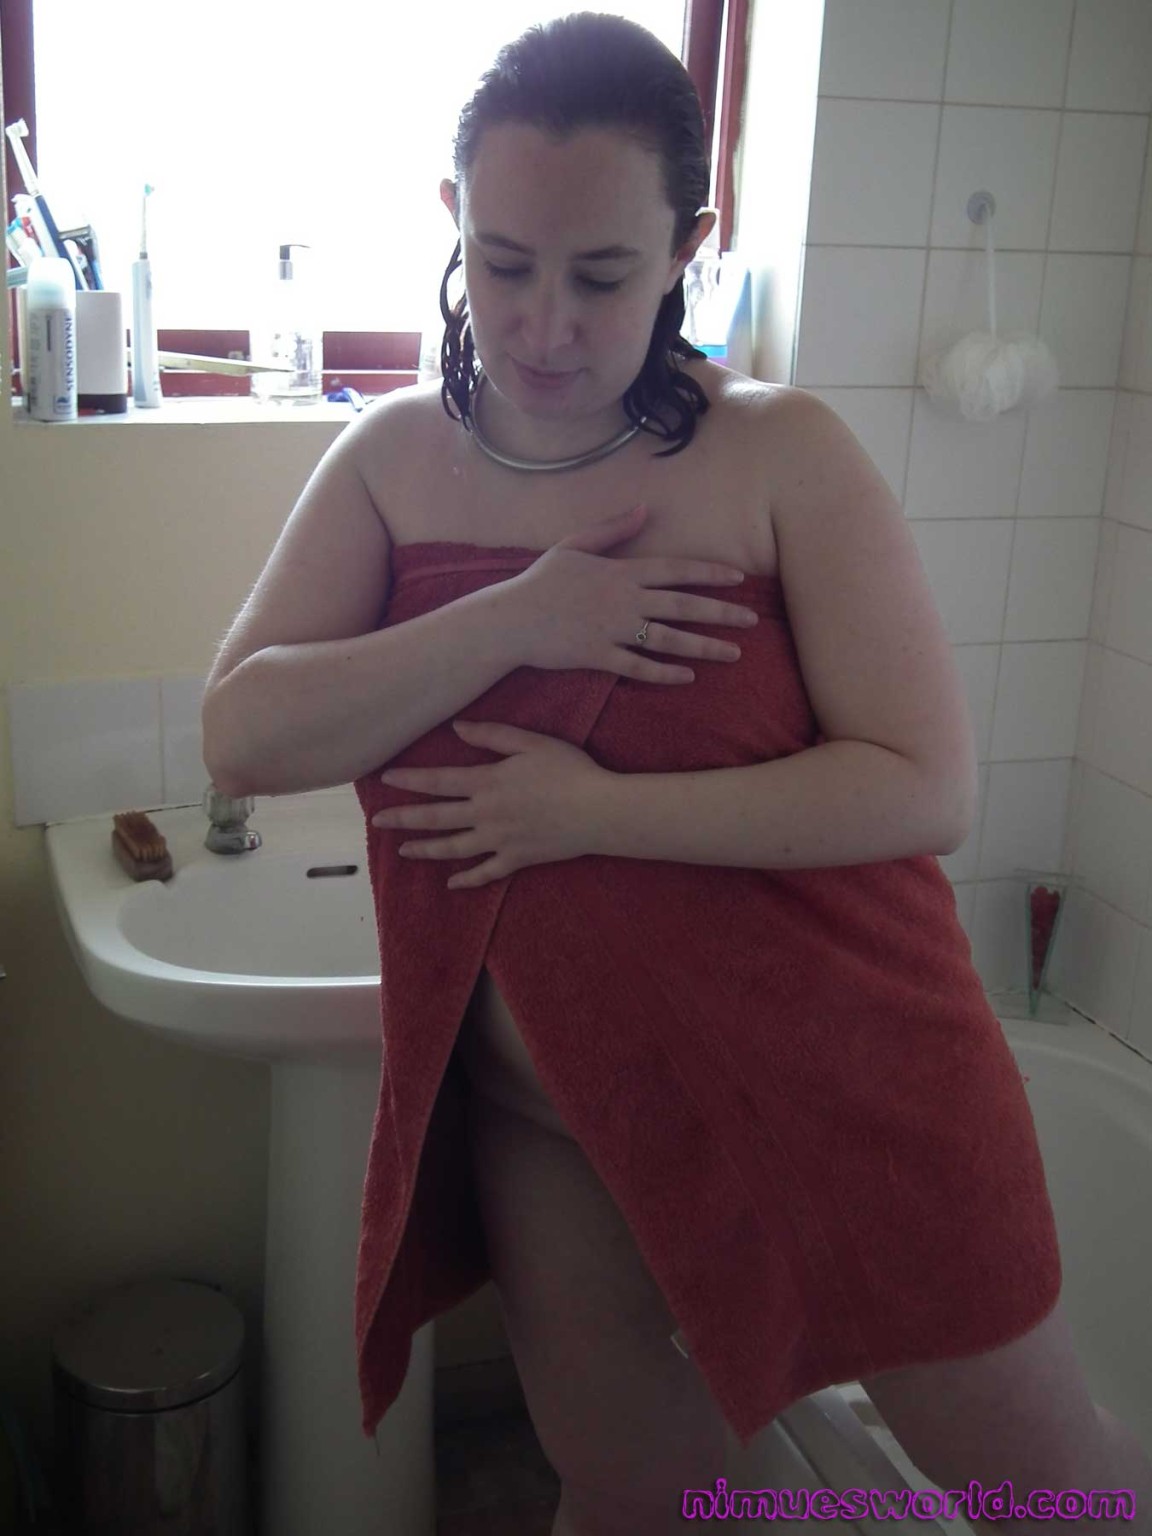 シャワーを浴びるアマチュア・ベイブ Nimues voyeur and sneak peeks at chubby english girl wash
 #75512262